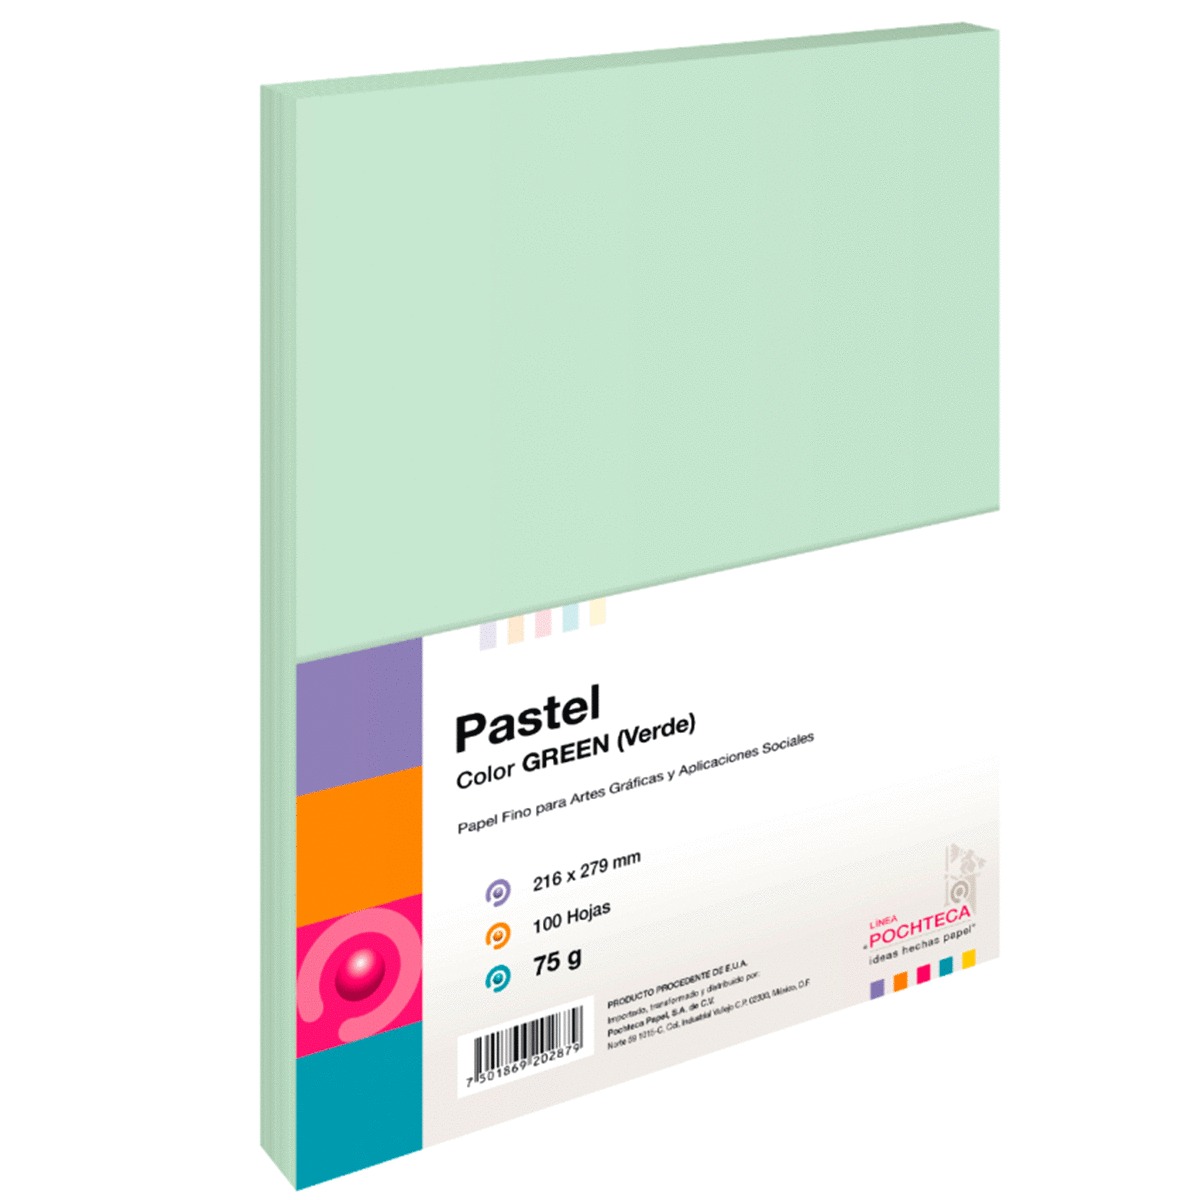 Hojas de Color Pochteca Pastel Paquete 100 hojas Carta Verde pastel 75 gr |  Office Depot Mexico